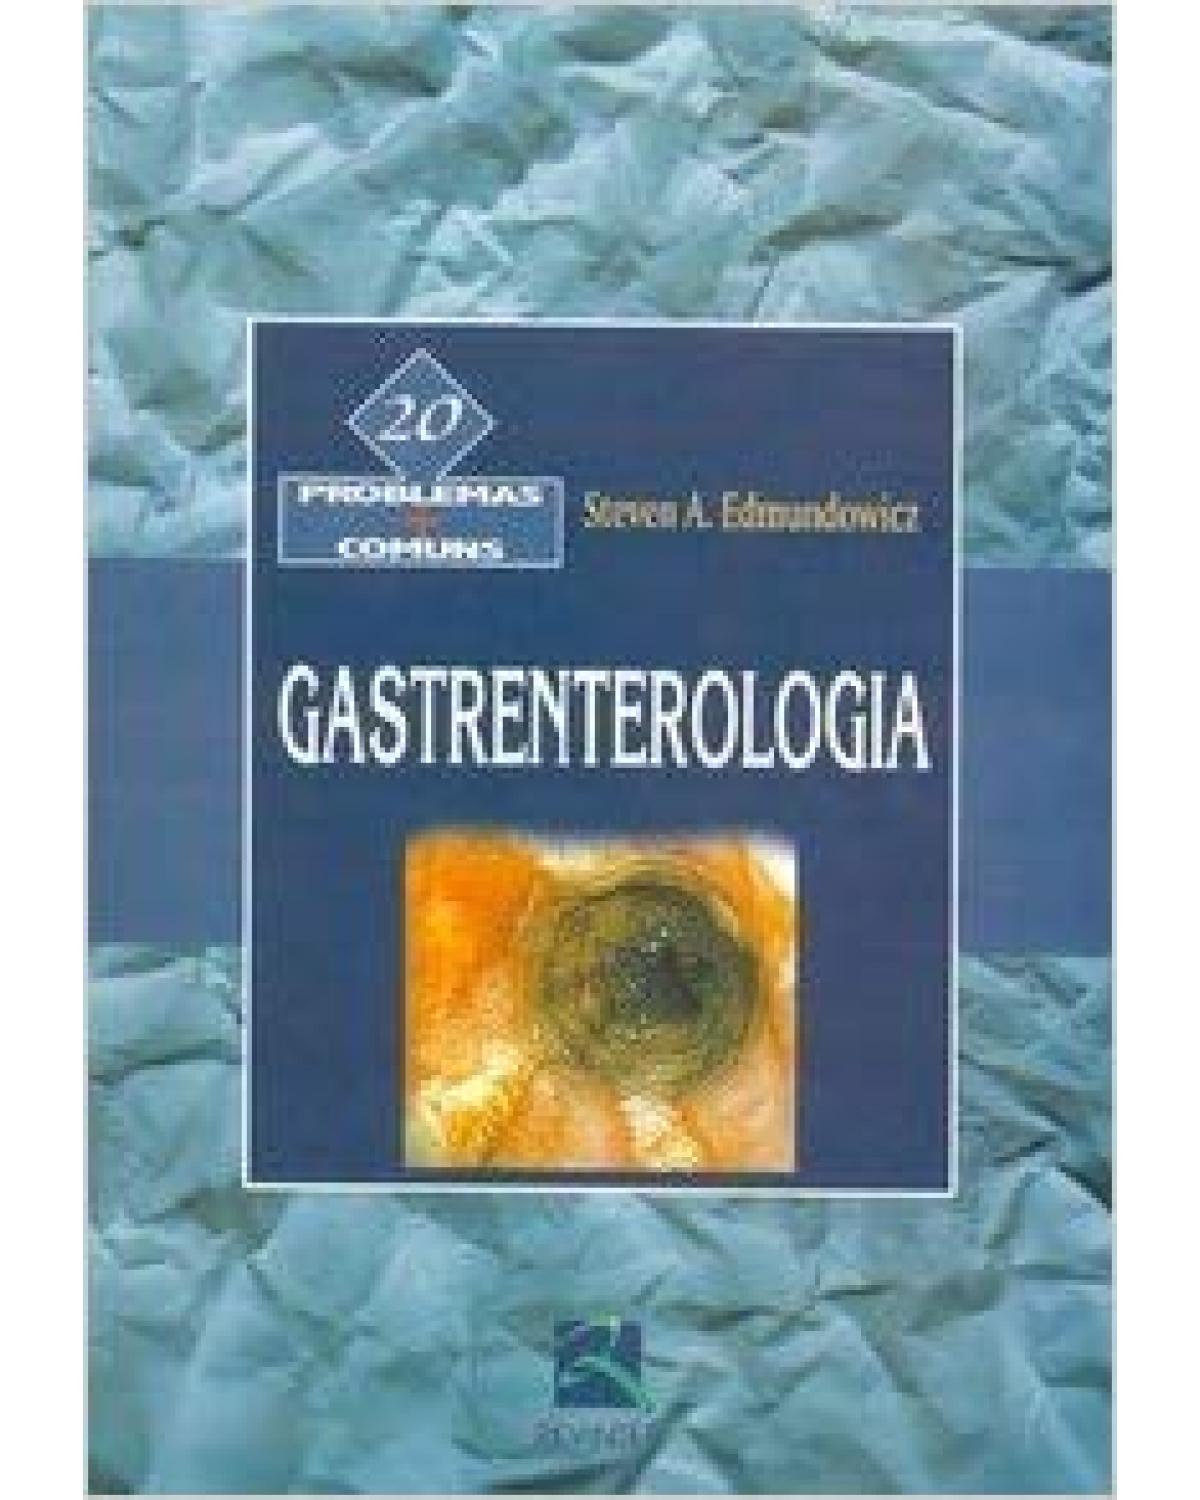 Gastrenterologia - 20 problemas + comuns - 1ª Edição | 2005